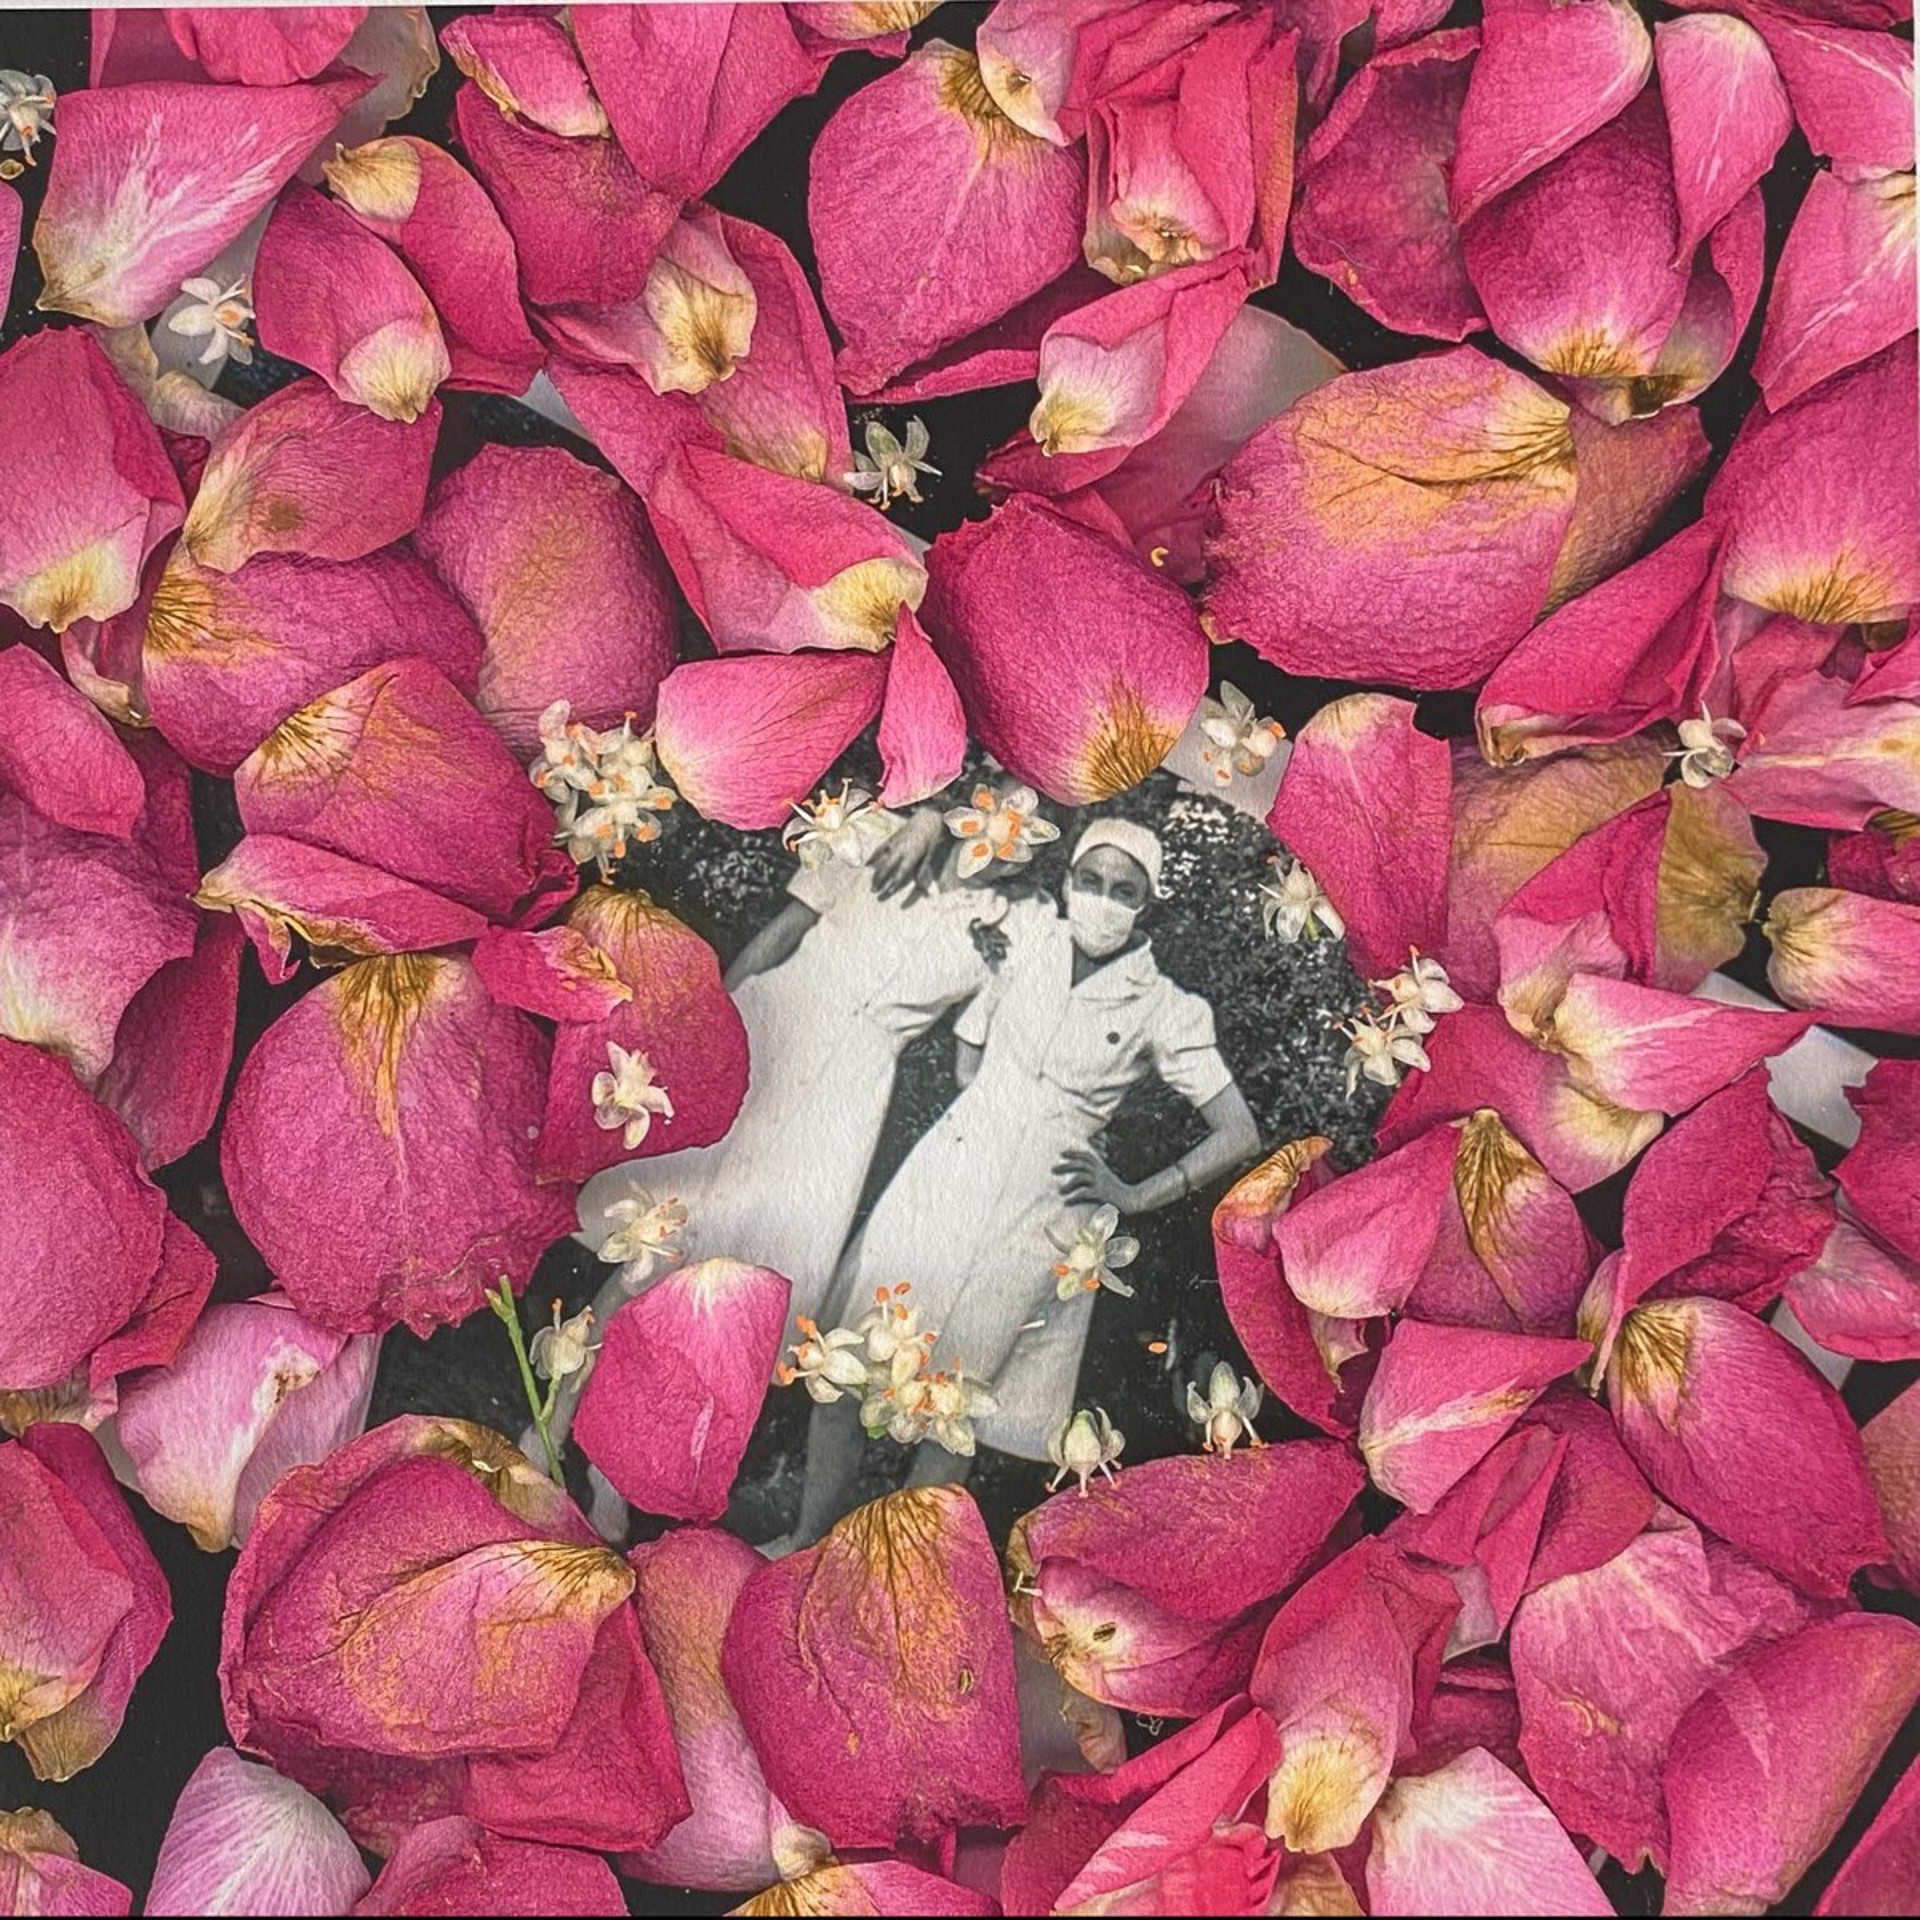 Rose Petal Wreath by Karen Bullock